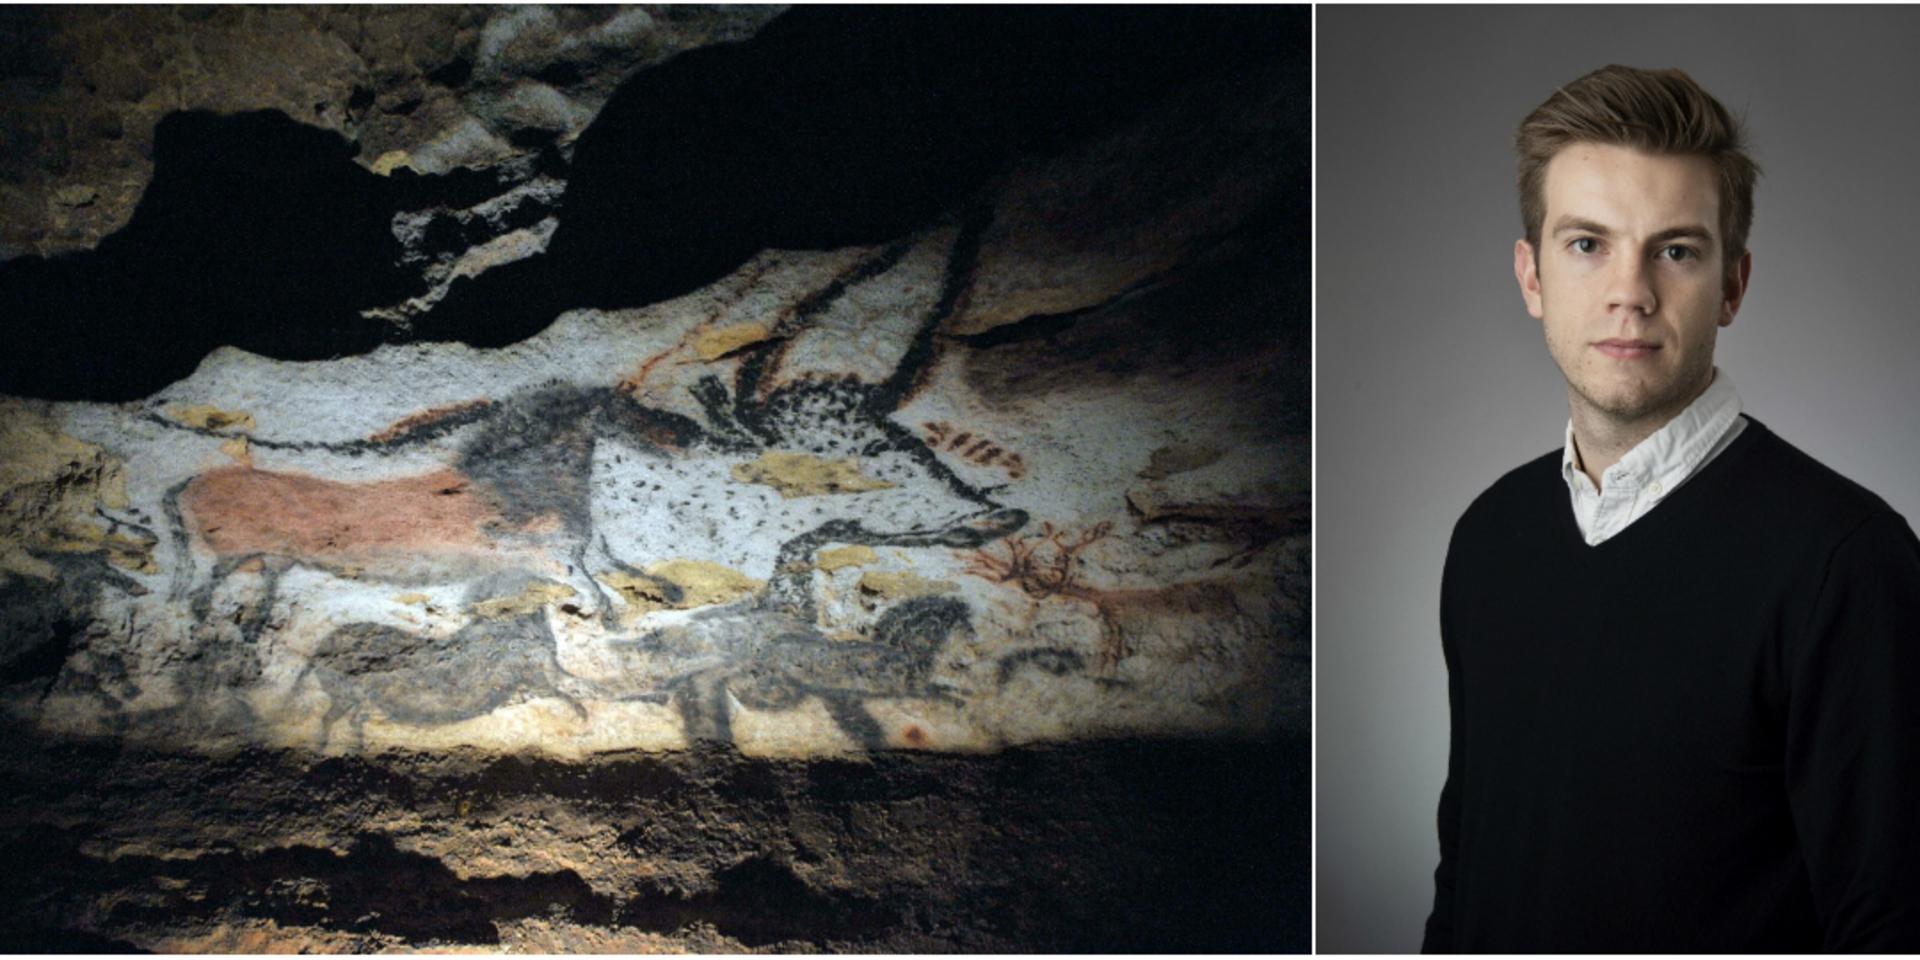 Grottmålningen på bilden är inte världens äldsta berättelse, däremot en väldigt gammal. 